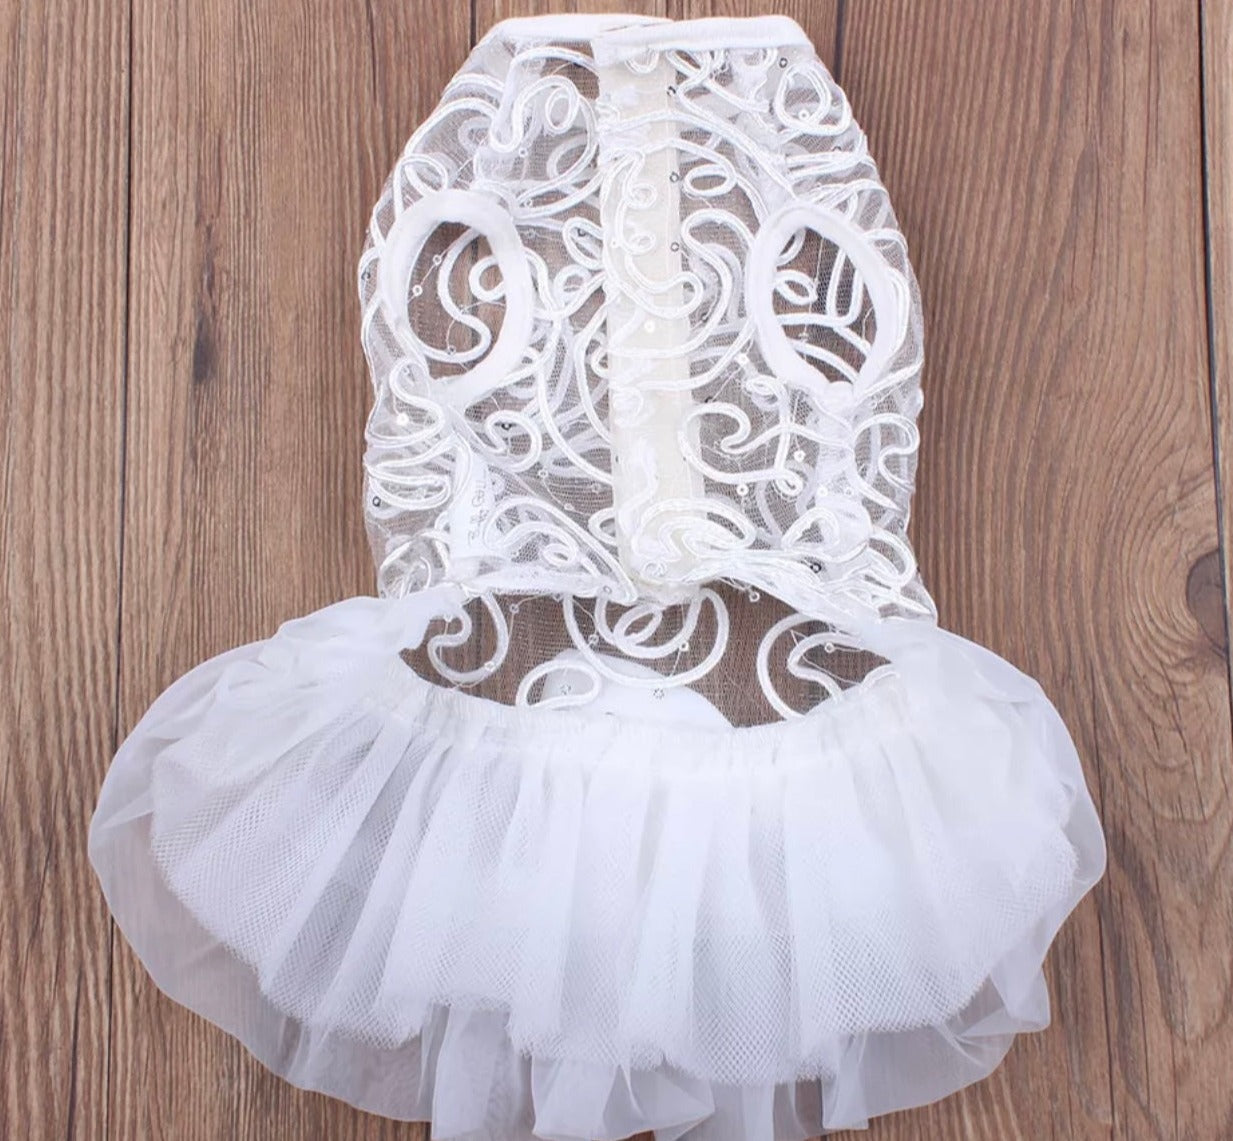 Dog Custom White Wedding Dress with Lace